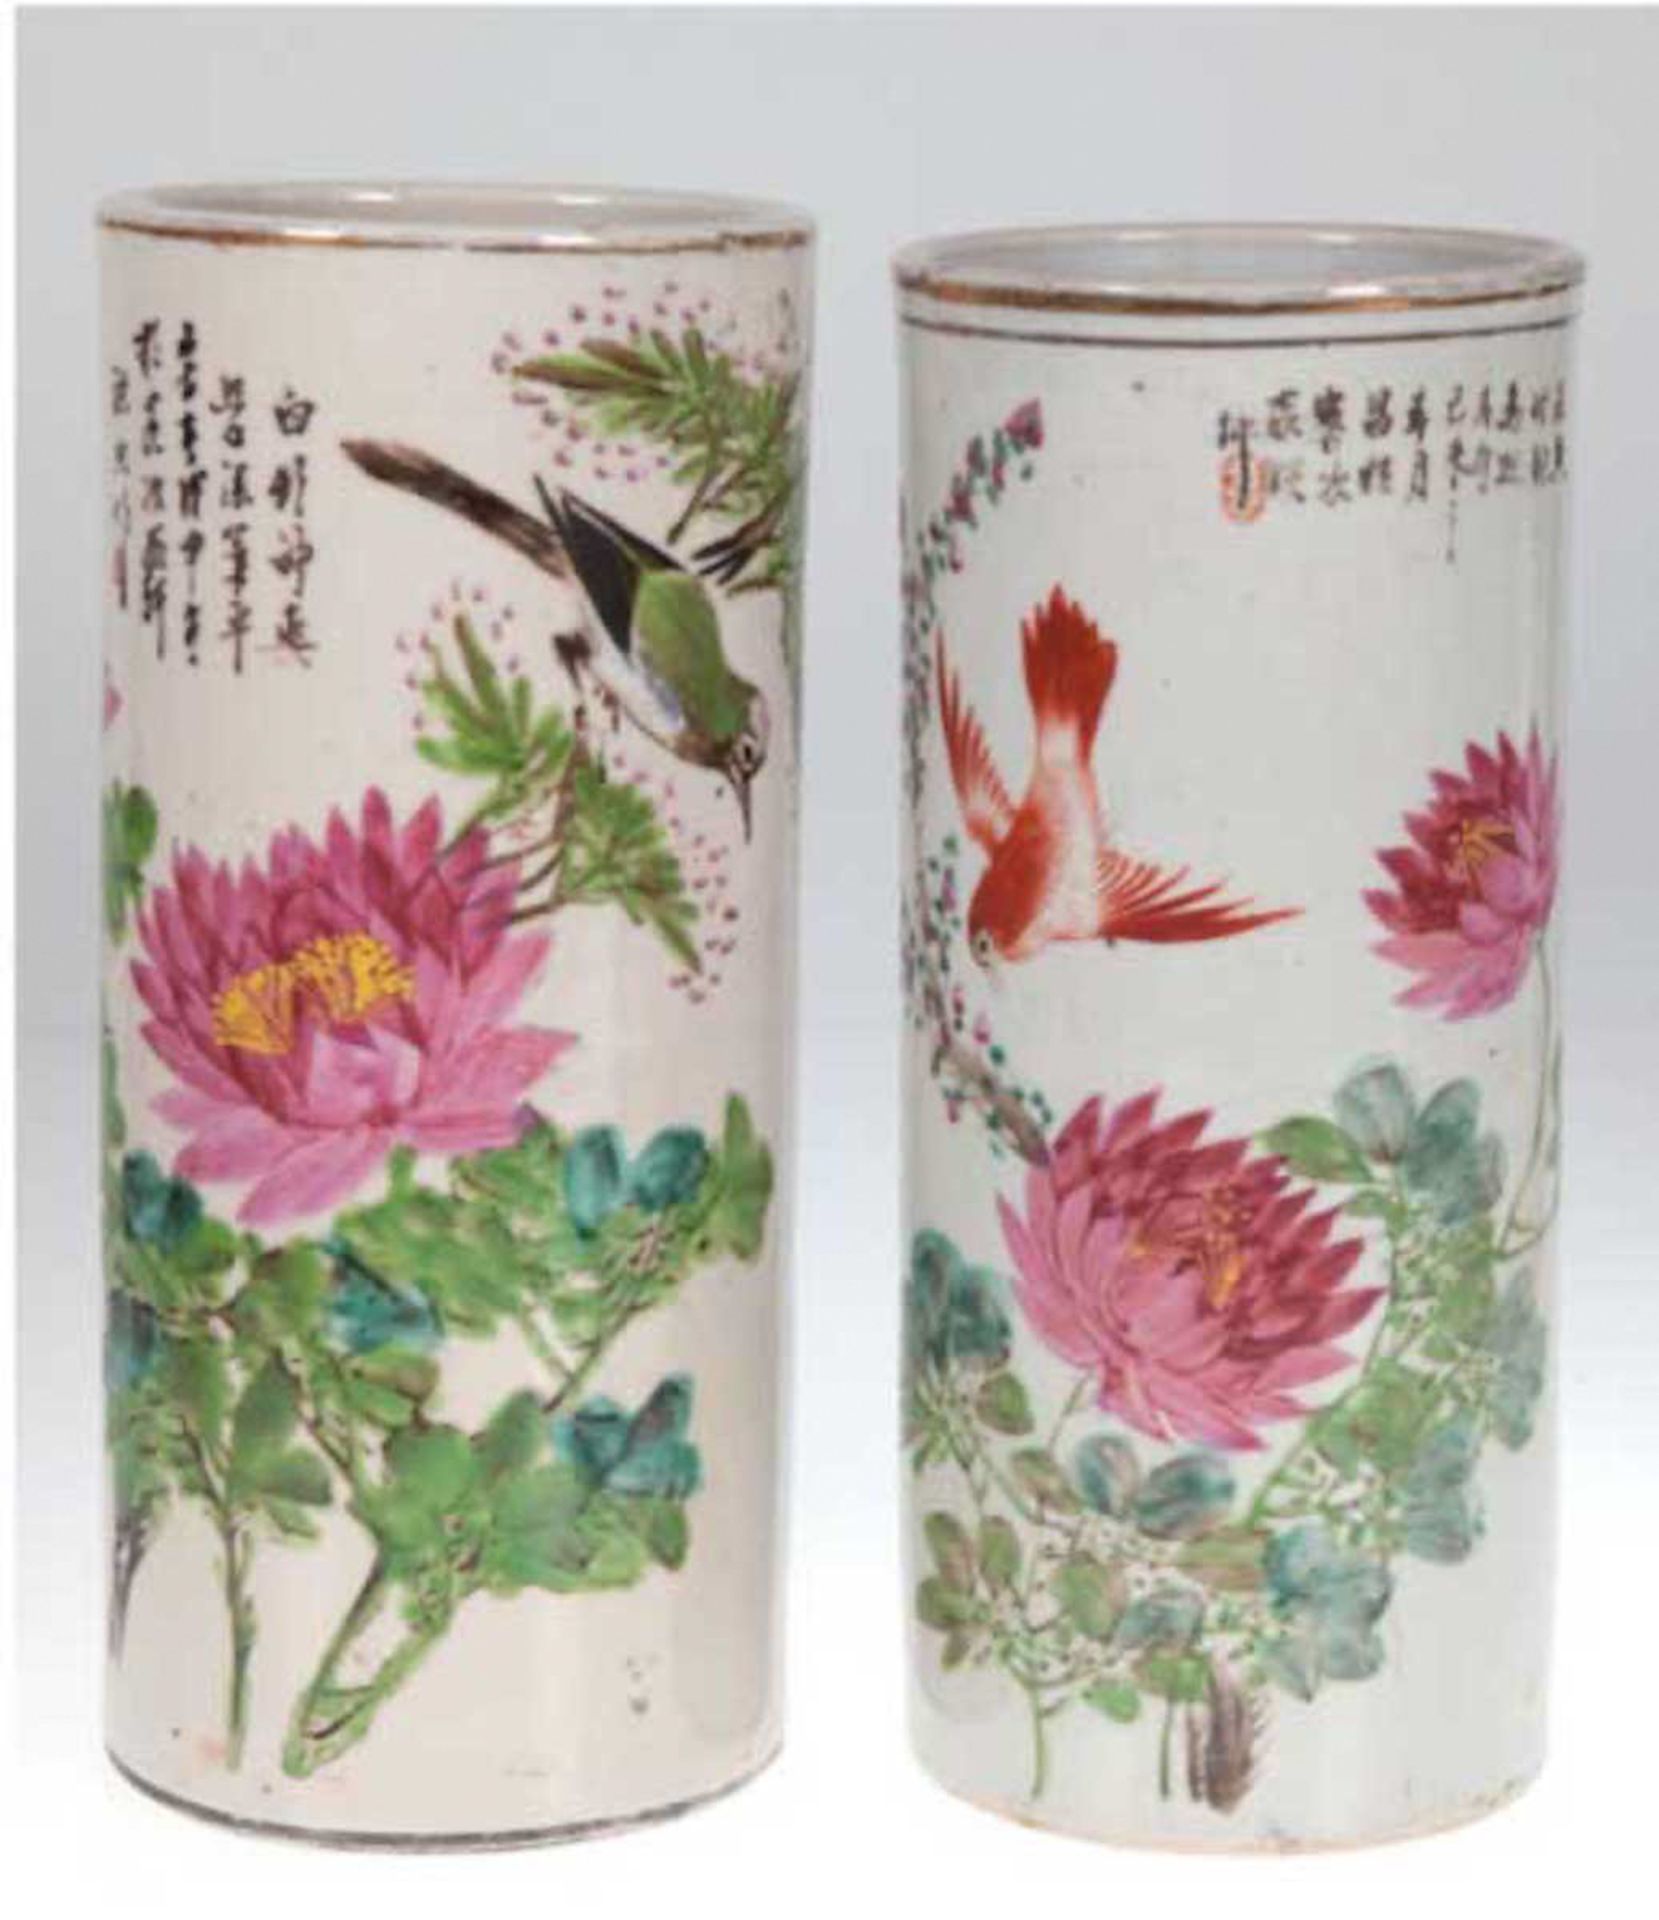 2 Stangenvasen, China, um 1900m mit Floral- und Vogelmalerei, unterschiedlich gemarkt,Goldran